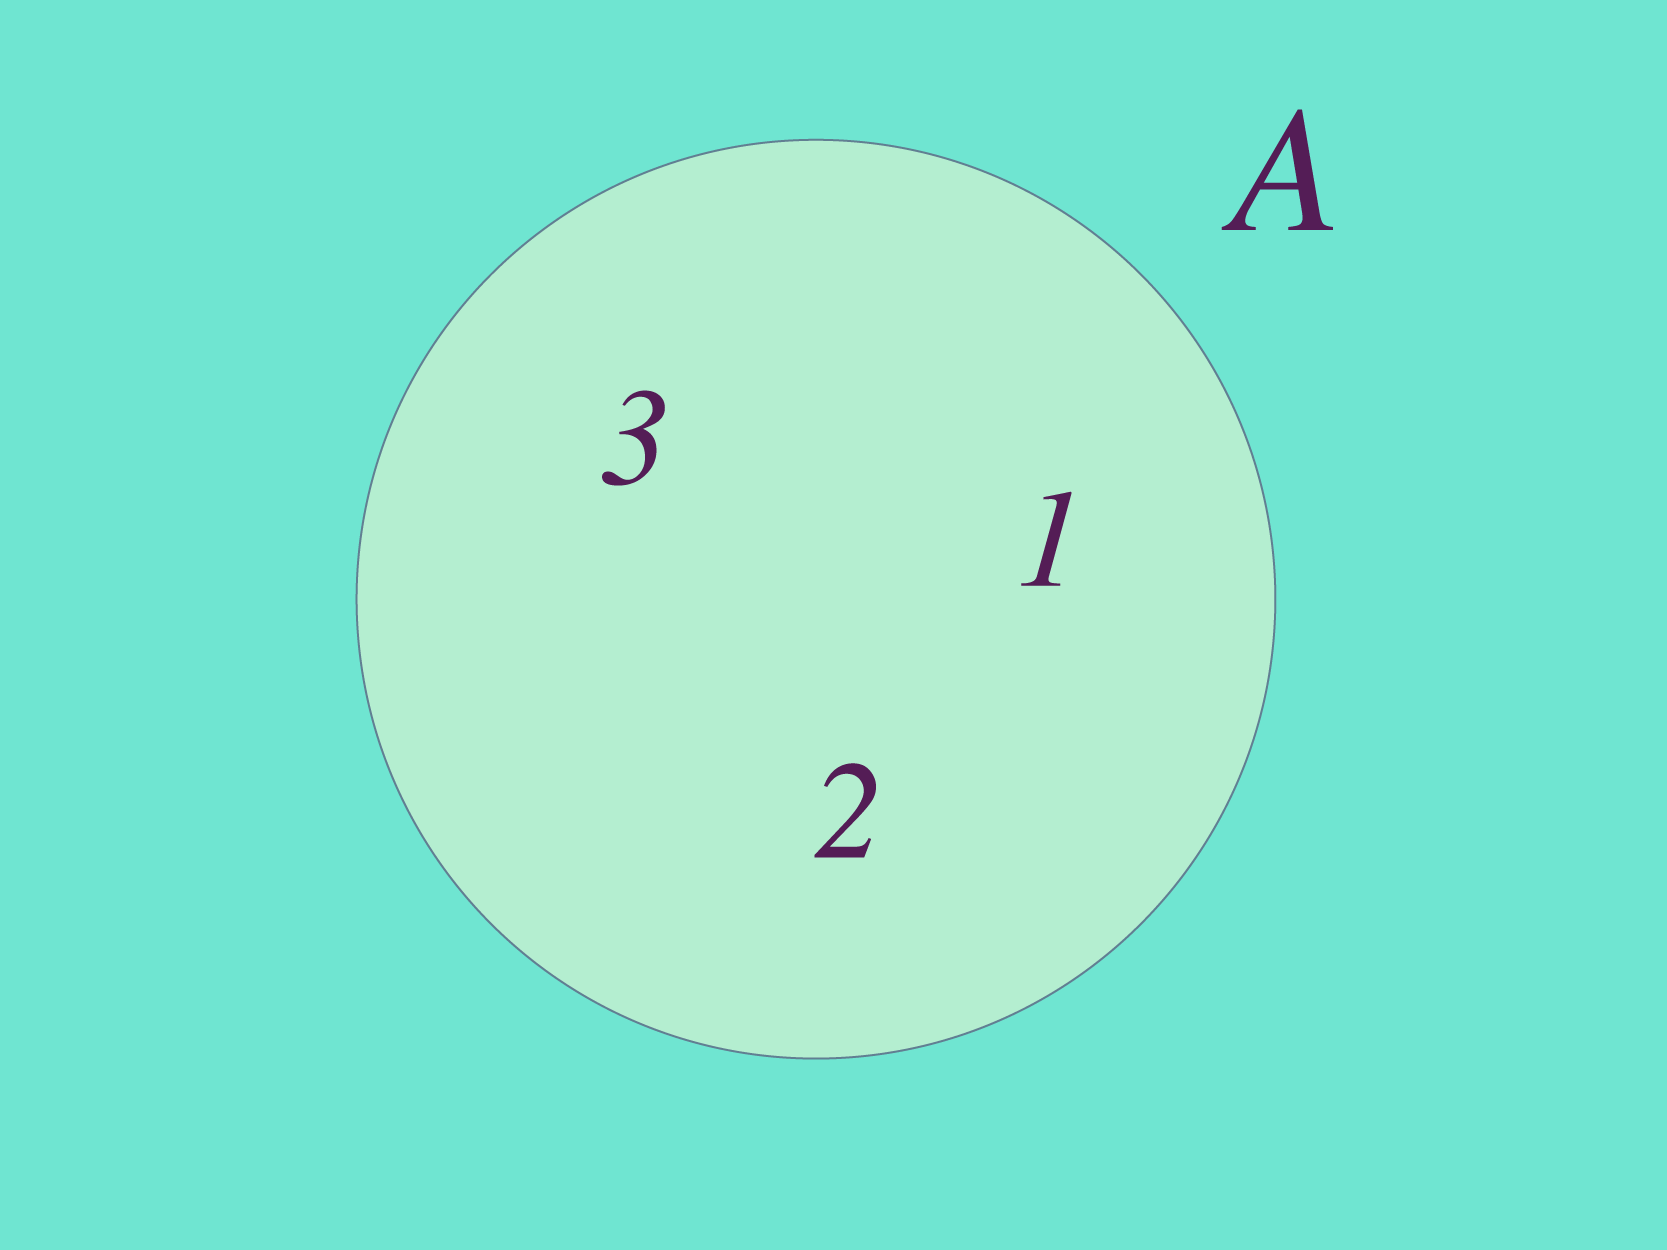 Conjunto A conformado por los elementos 1, 2, 3.